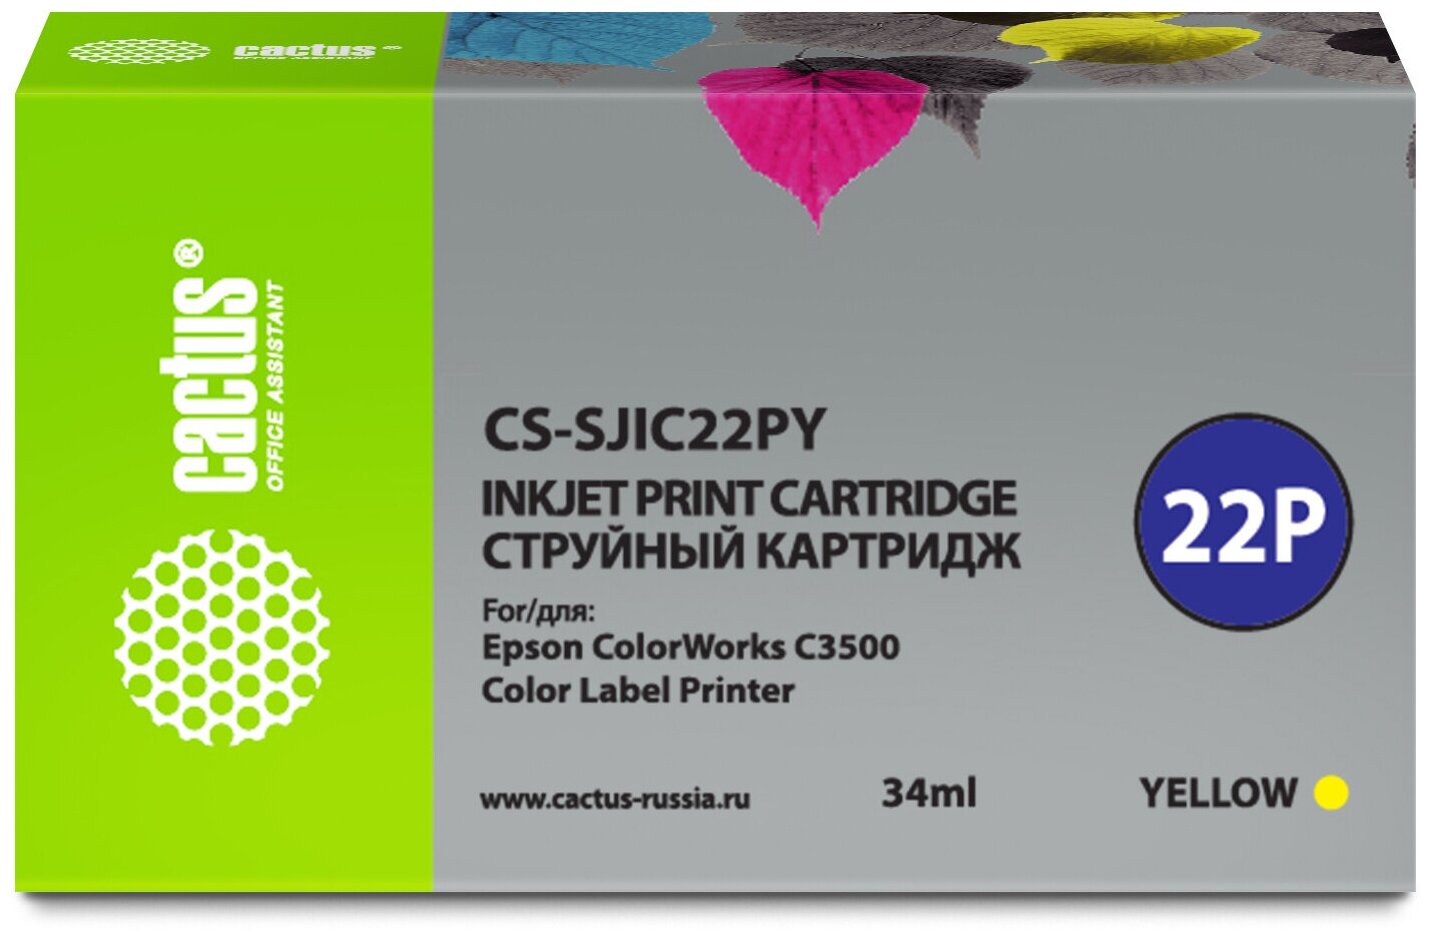 Картридж SJIC22PY Yellow для принтера Эпсон, Epson ColorWorks TM-C 3500